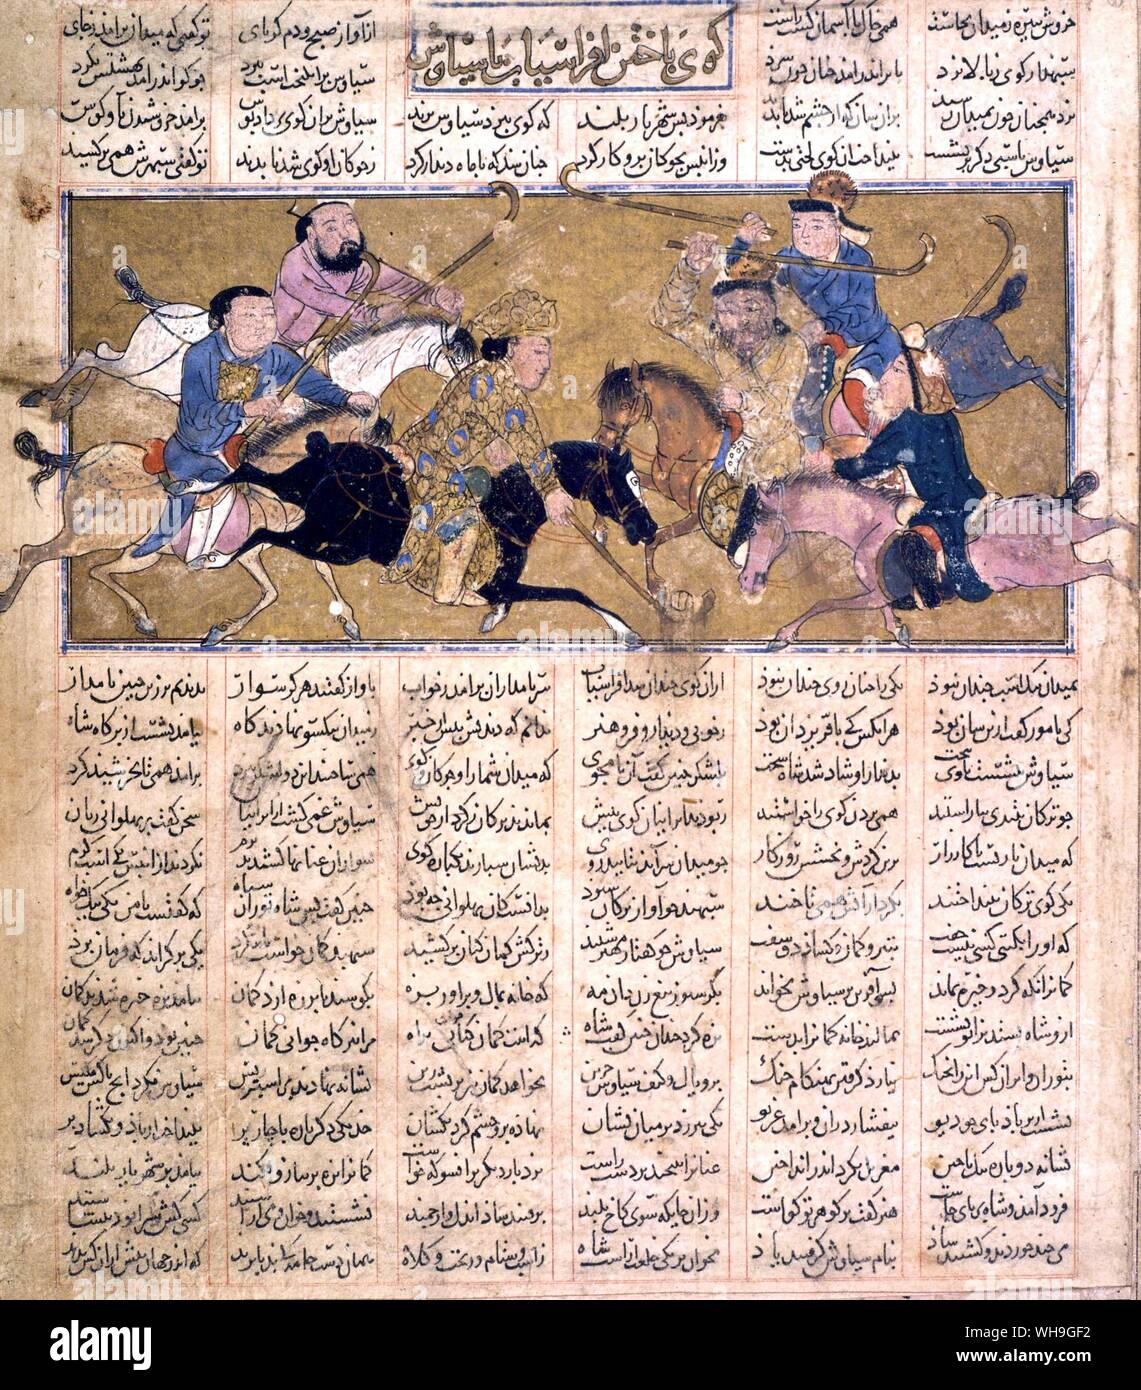 Polo de Naman persa Shah 1340 Foto de stock